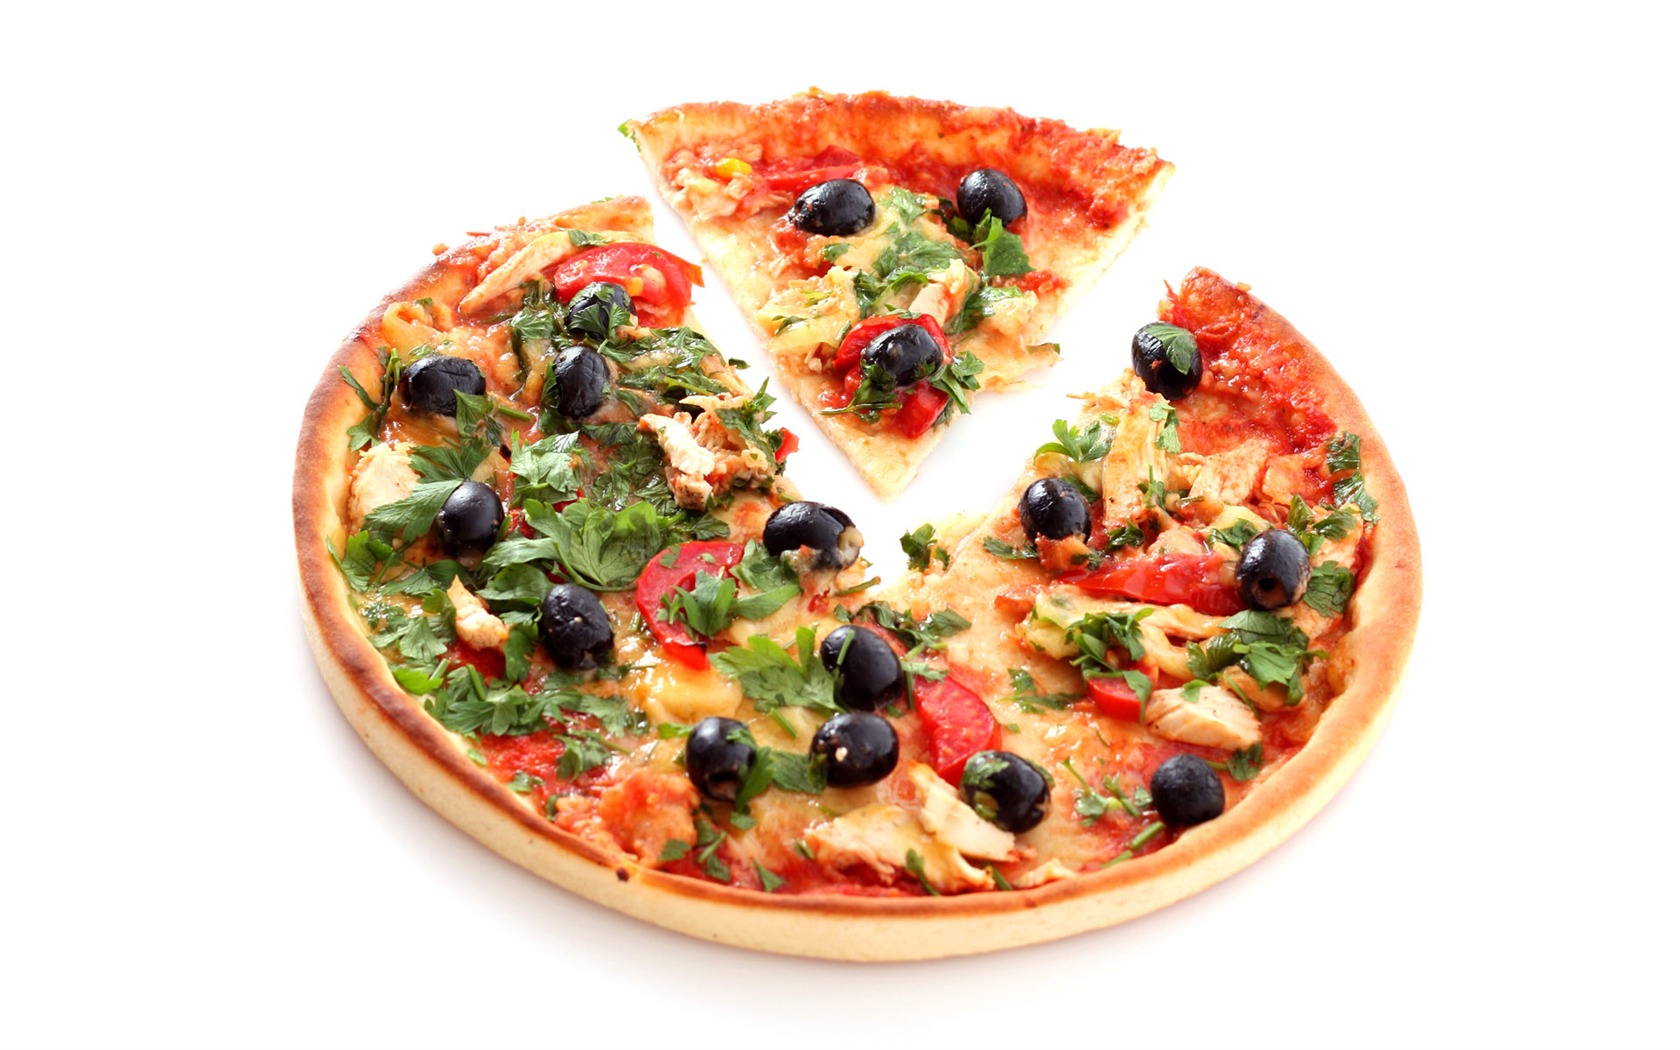 Fondos de pizzerías de Alimentos (4) #5 - 1680x1050